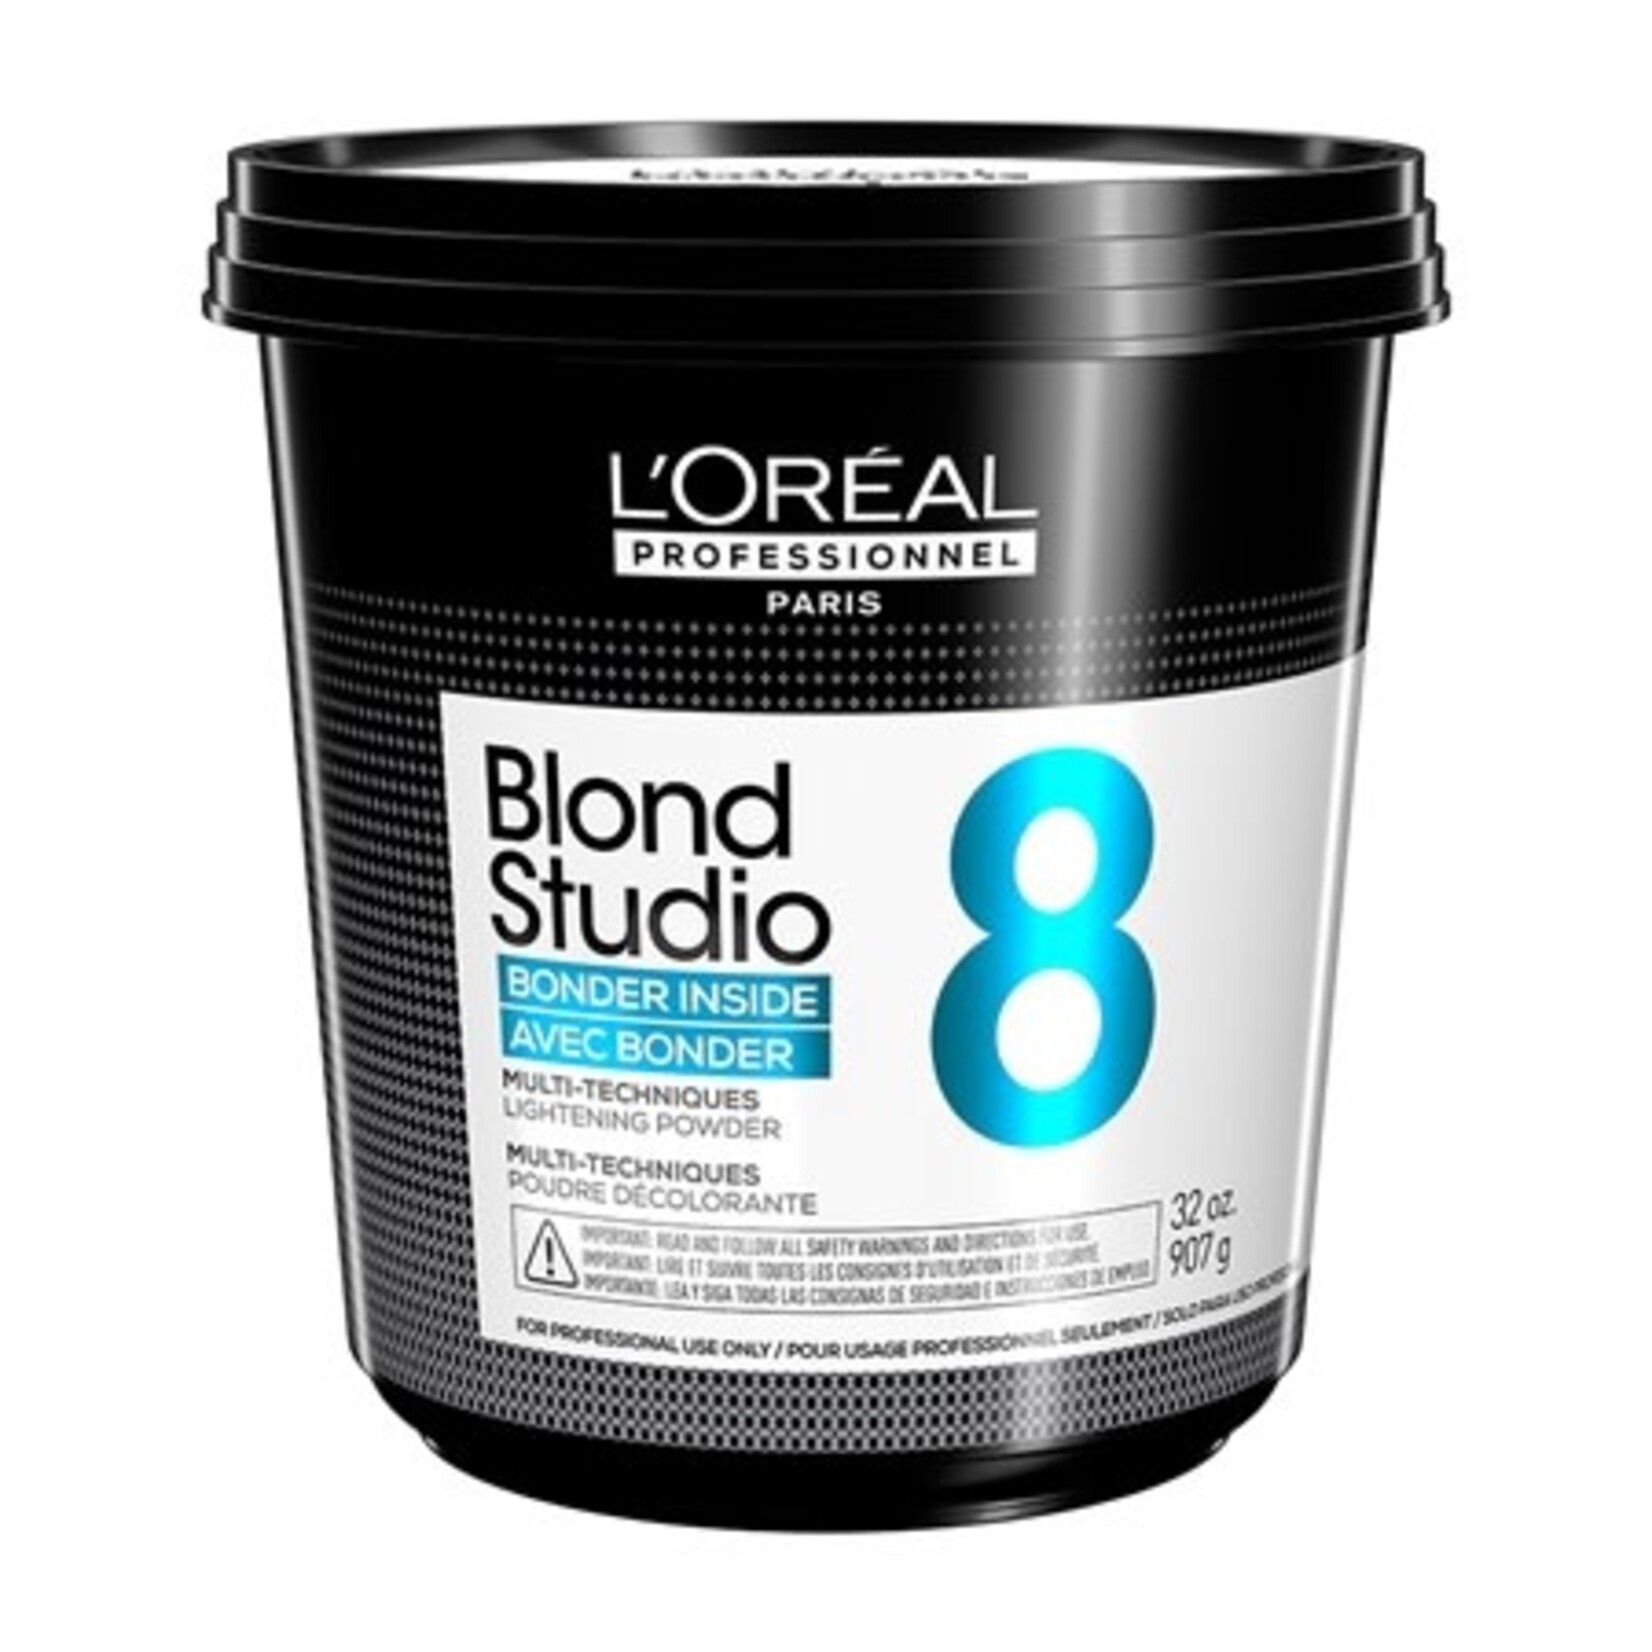 L'Oréal L'Oréal Professionnel - Blond Studio Décolorant 907g